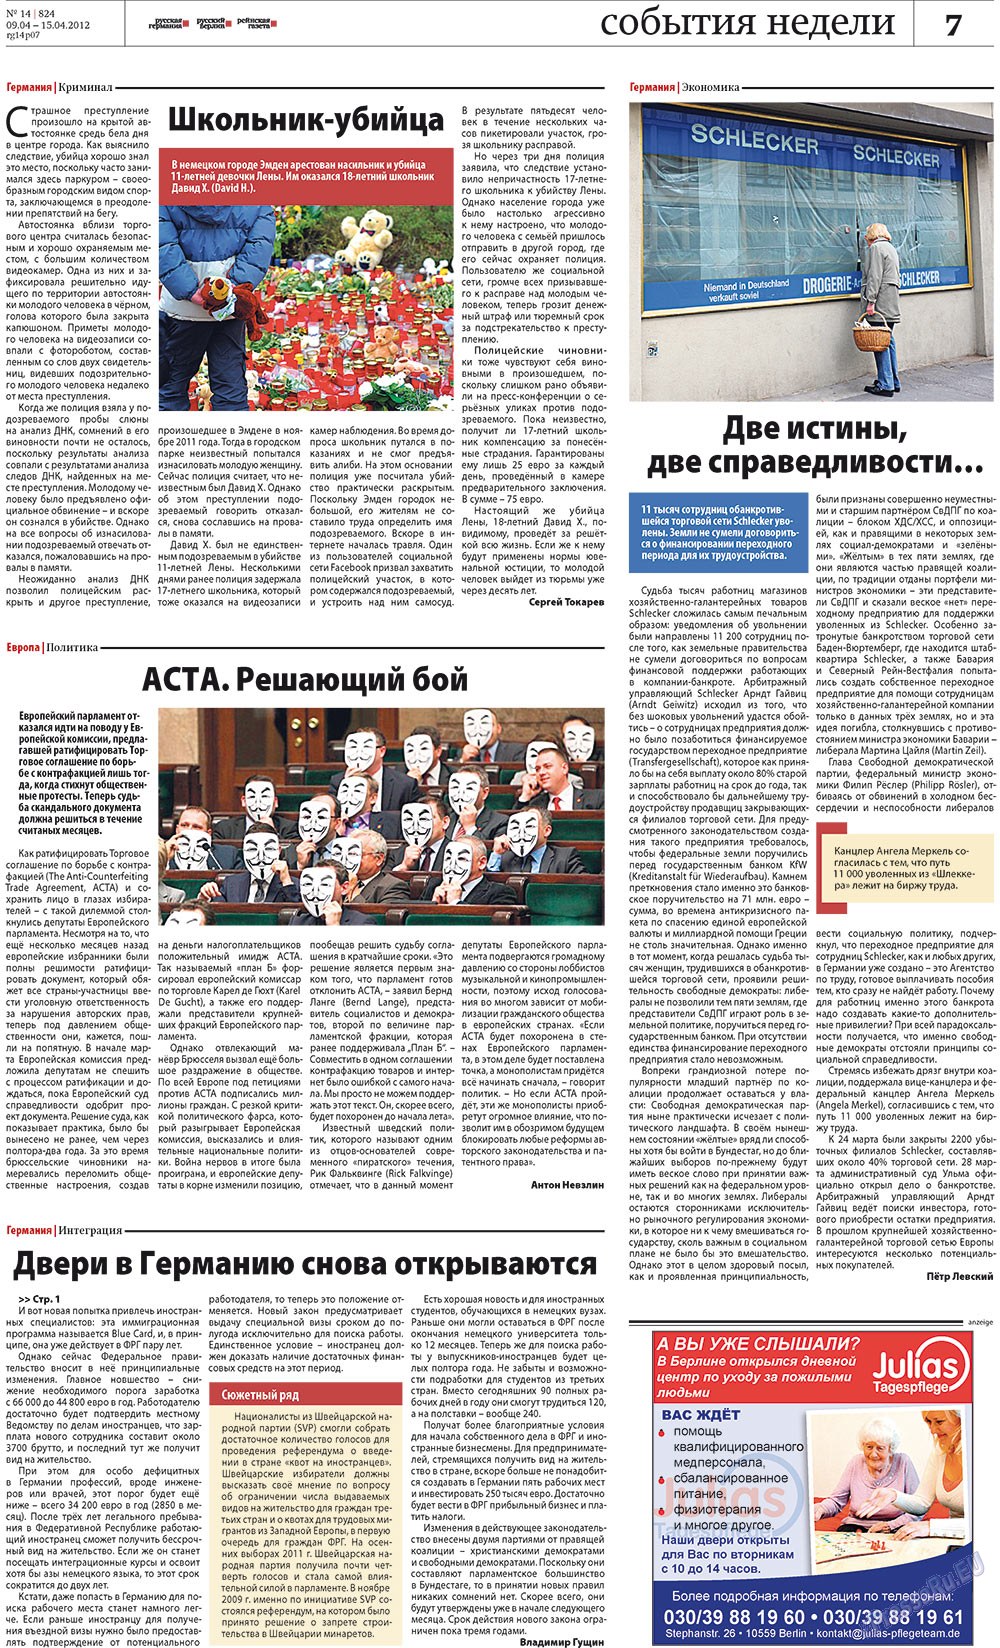 Рейнская газета, газета. 2012 №14 стр.7